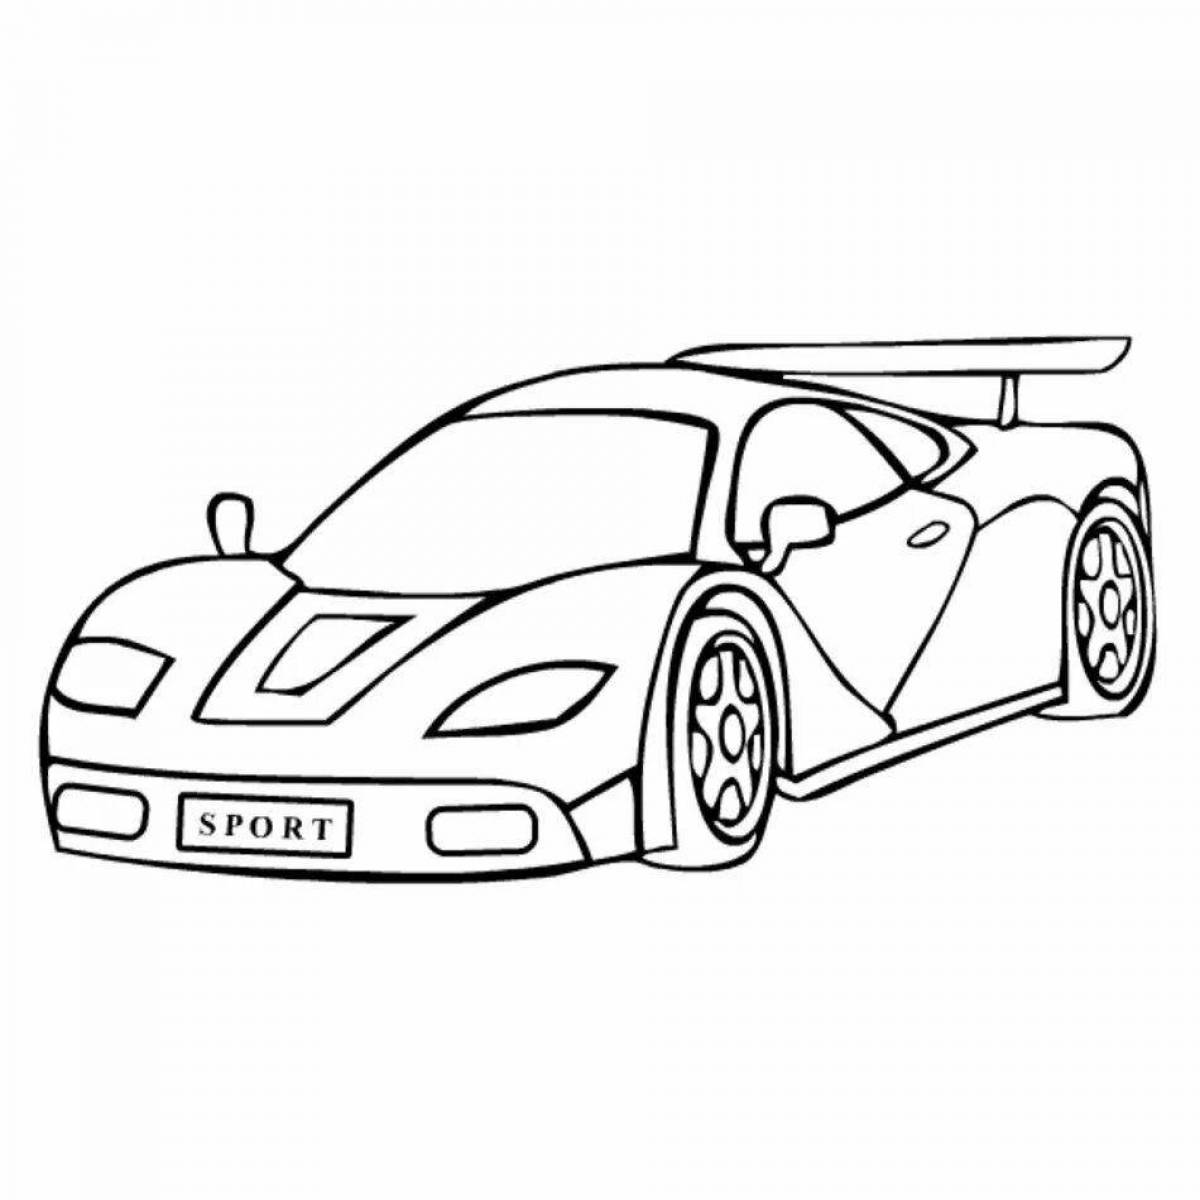 Royal sports car coloring page